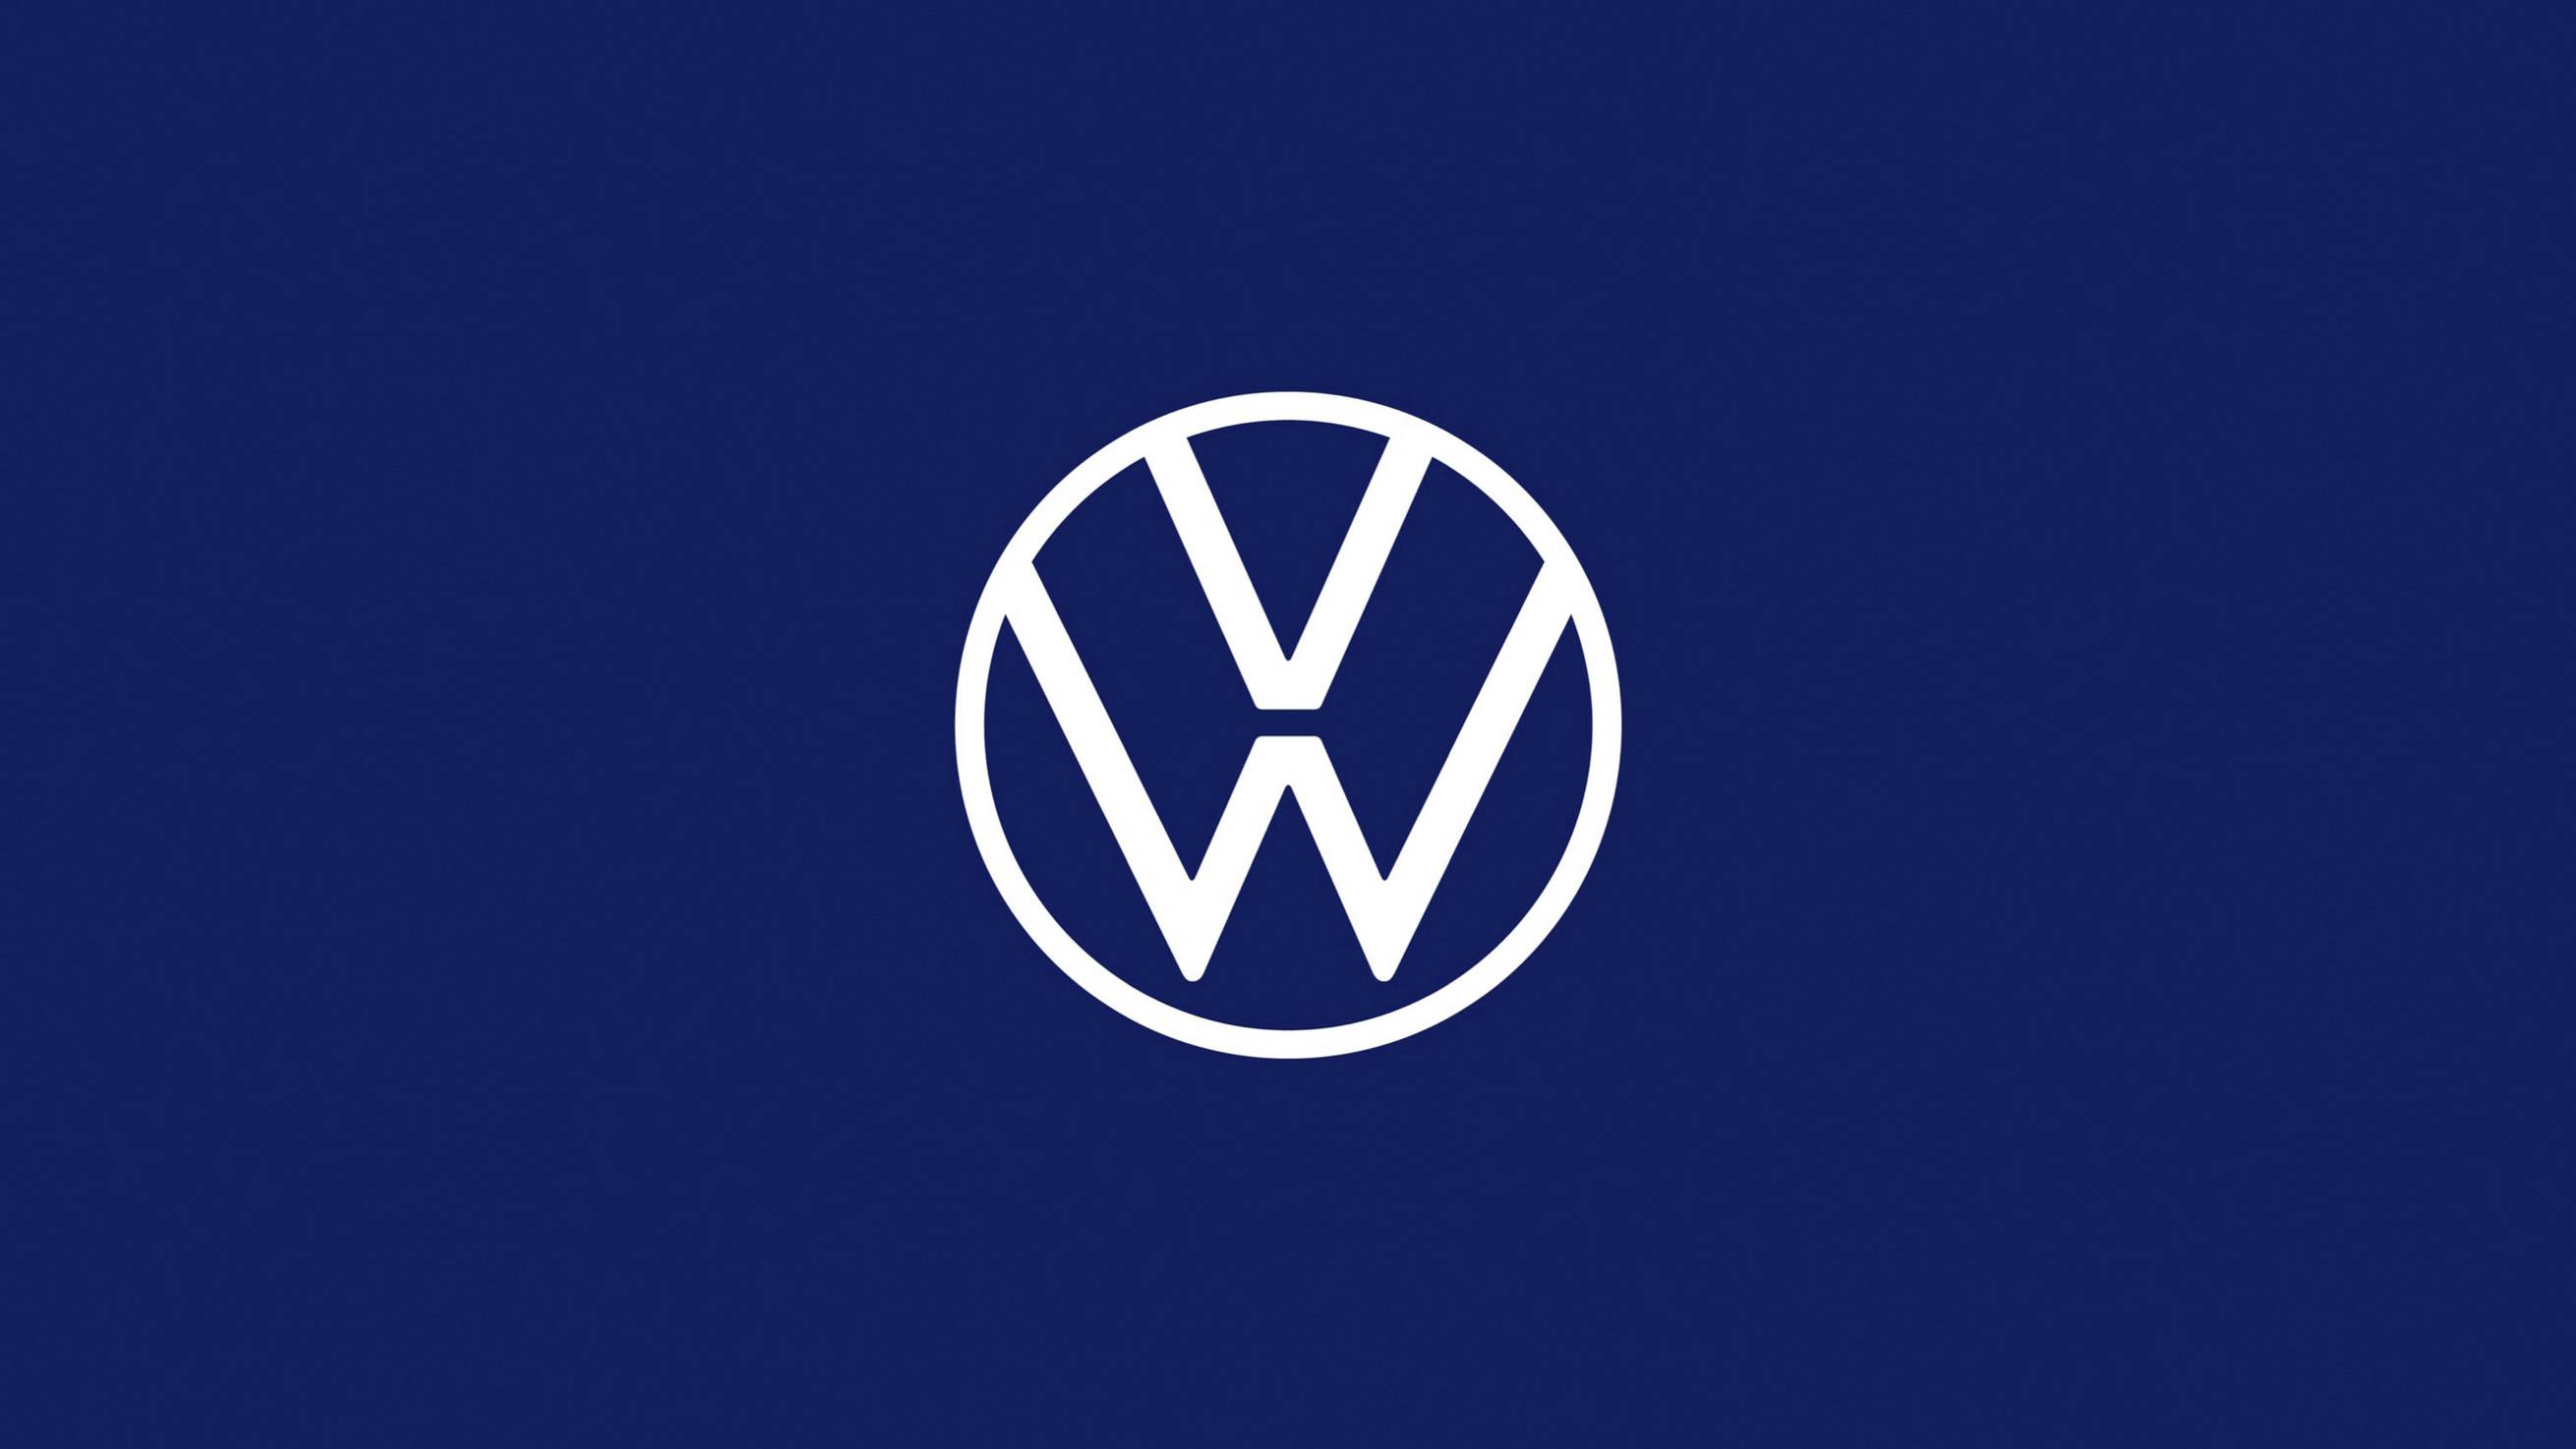 Logo Volkswagen 2019